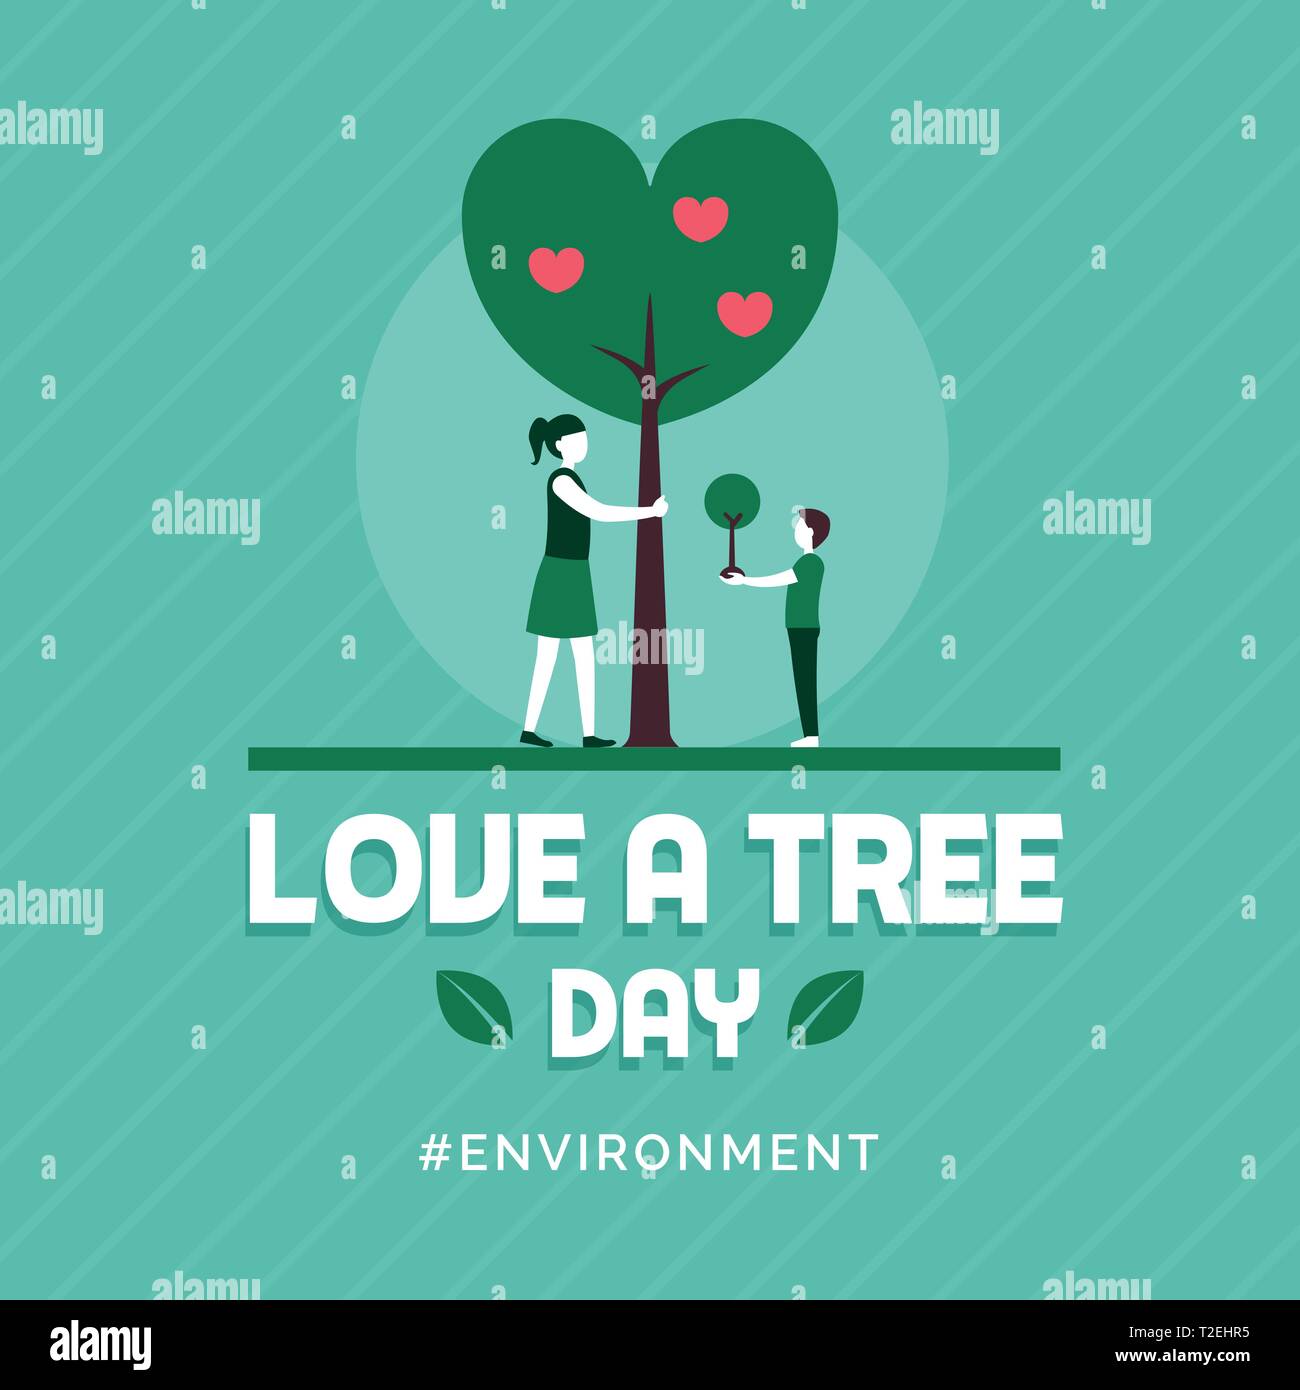 Liebe ein Baum tag Feier Design mit Frau und Kind einen Baum umarmen, Betrieb einer Anlage Stock Vektor